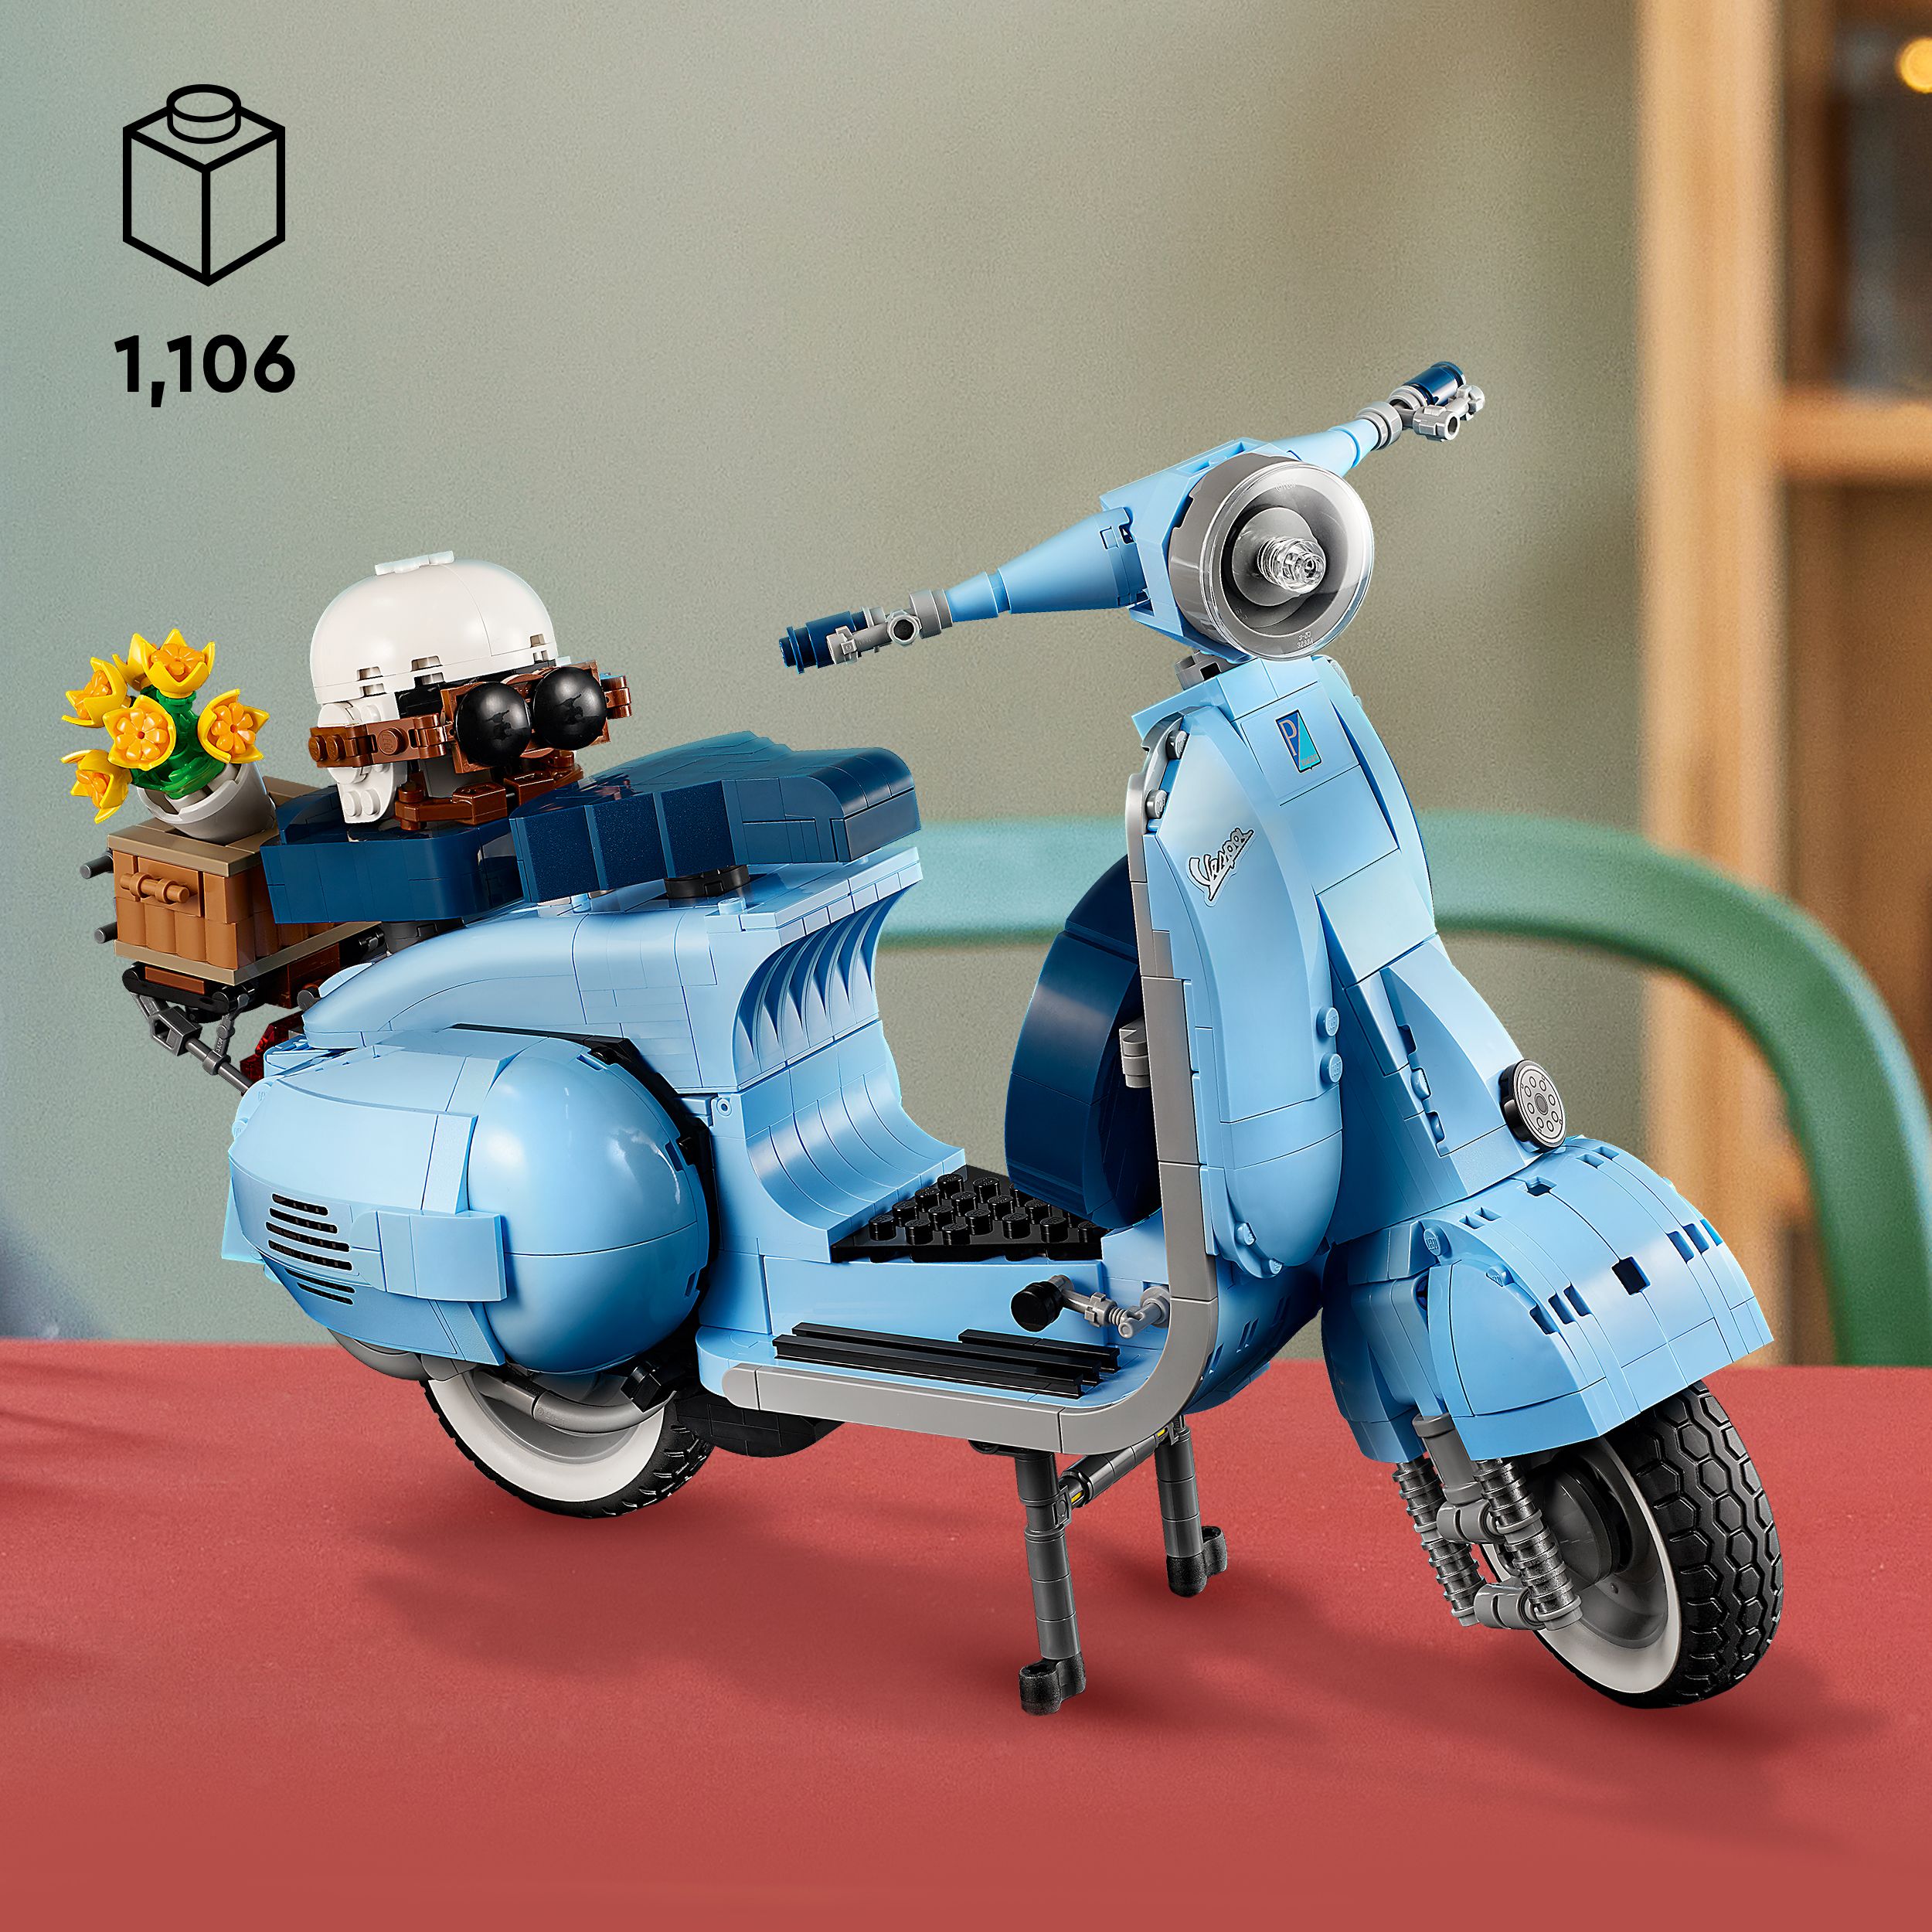 Lego 10298 vespa 125, set in mattoncini, modellismo adulti, replica piaggio anni 60, idea regalo creativa, hobby rilassante - LEGO CREATOR EXPERT, Lego